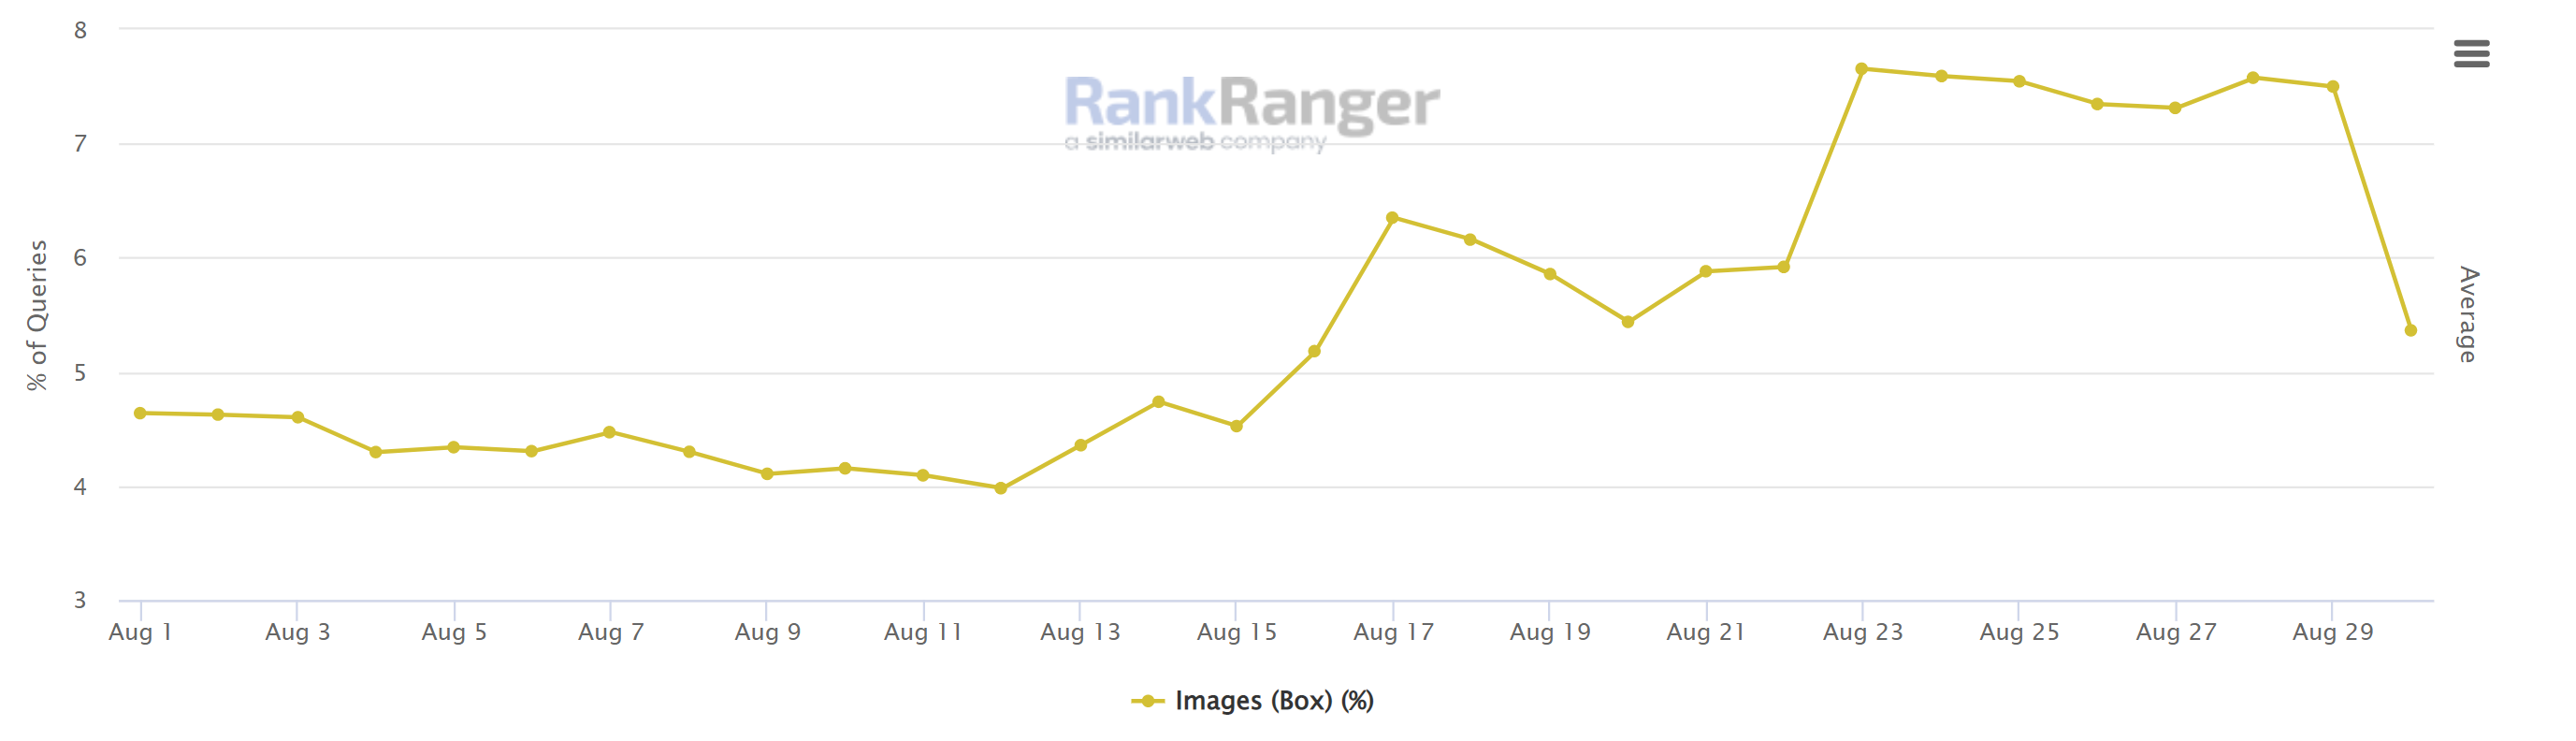 RankRanger SERP Features: Image Box in der mobilen Suche - Stand 30.08.22